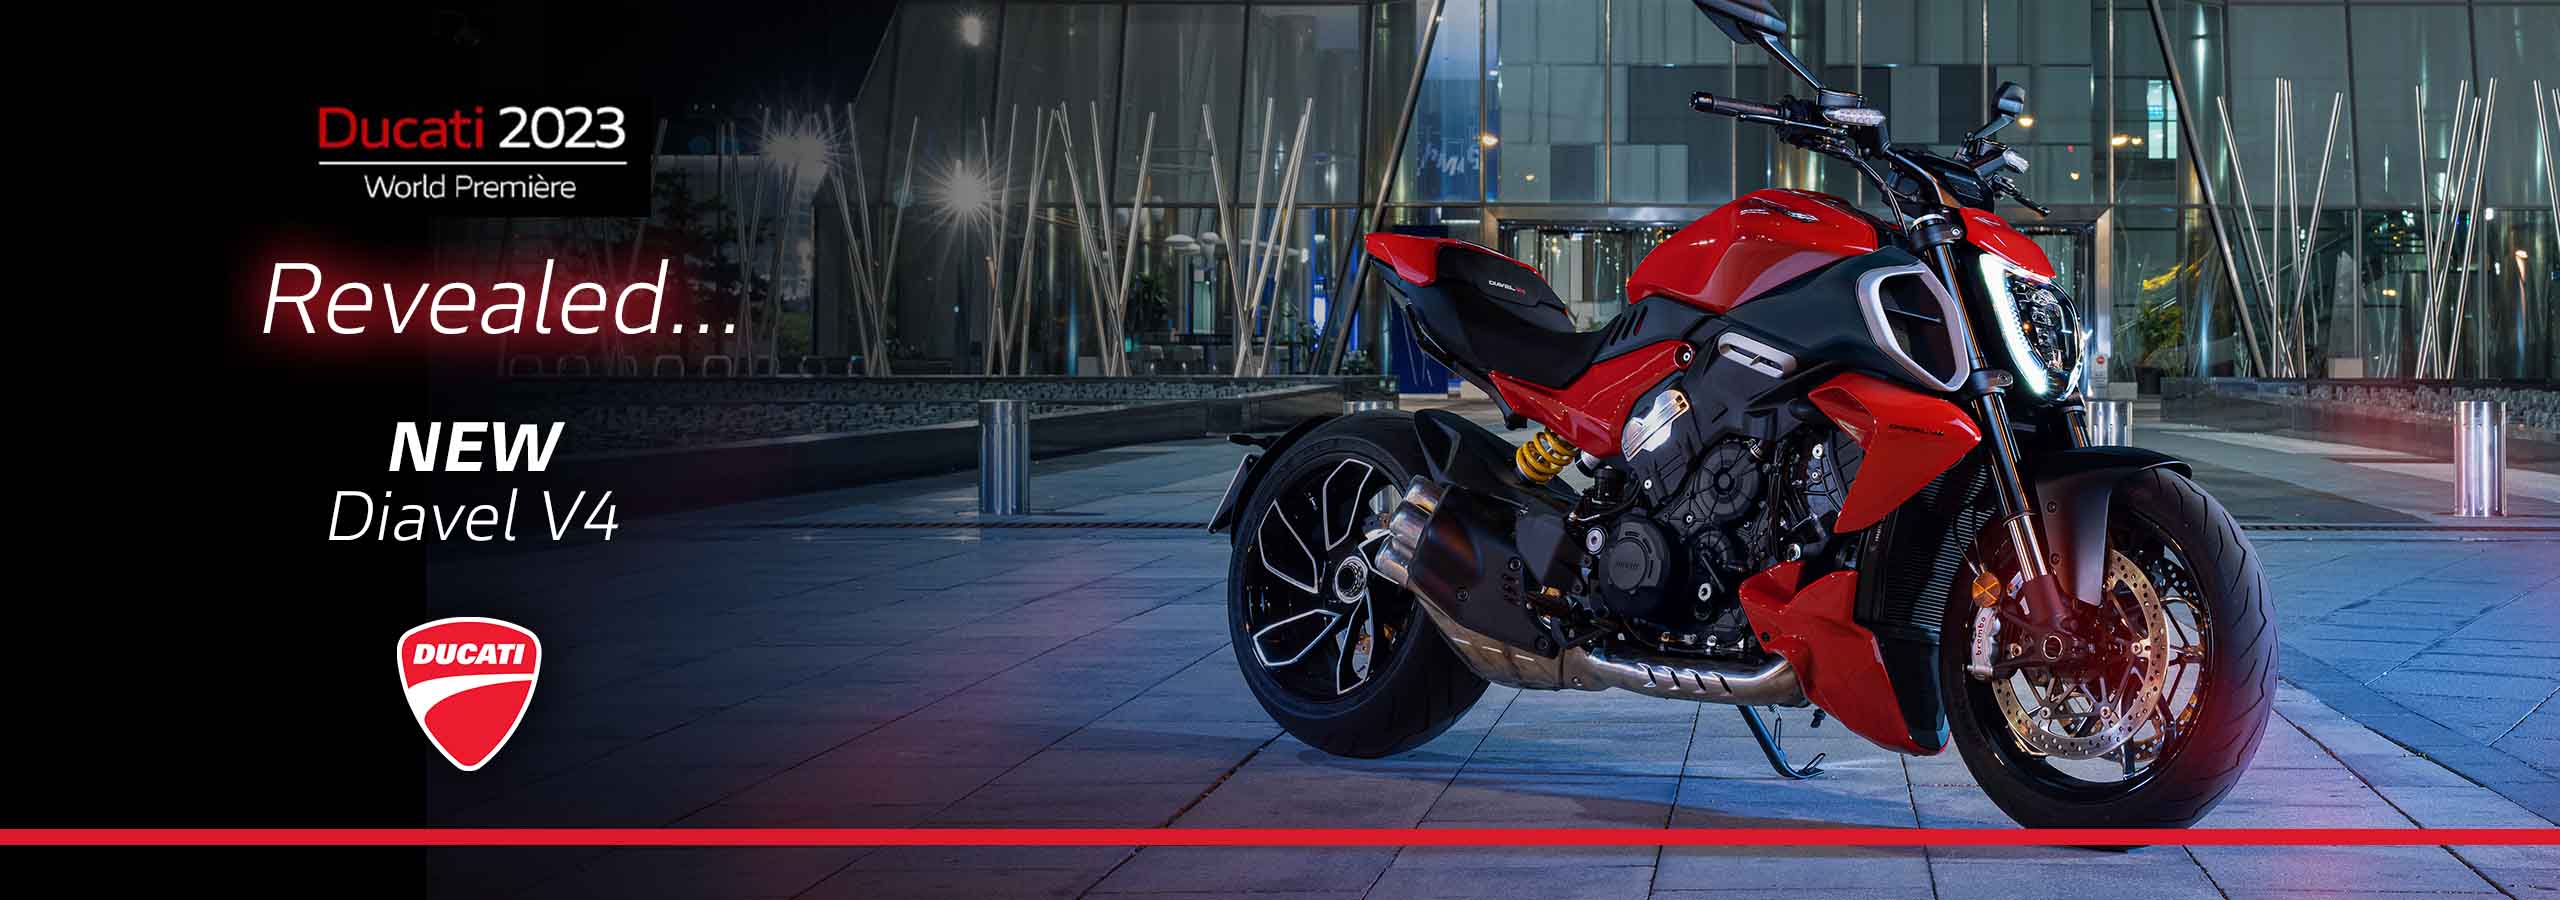 Revealed the All-new Ducati Diavel V4